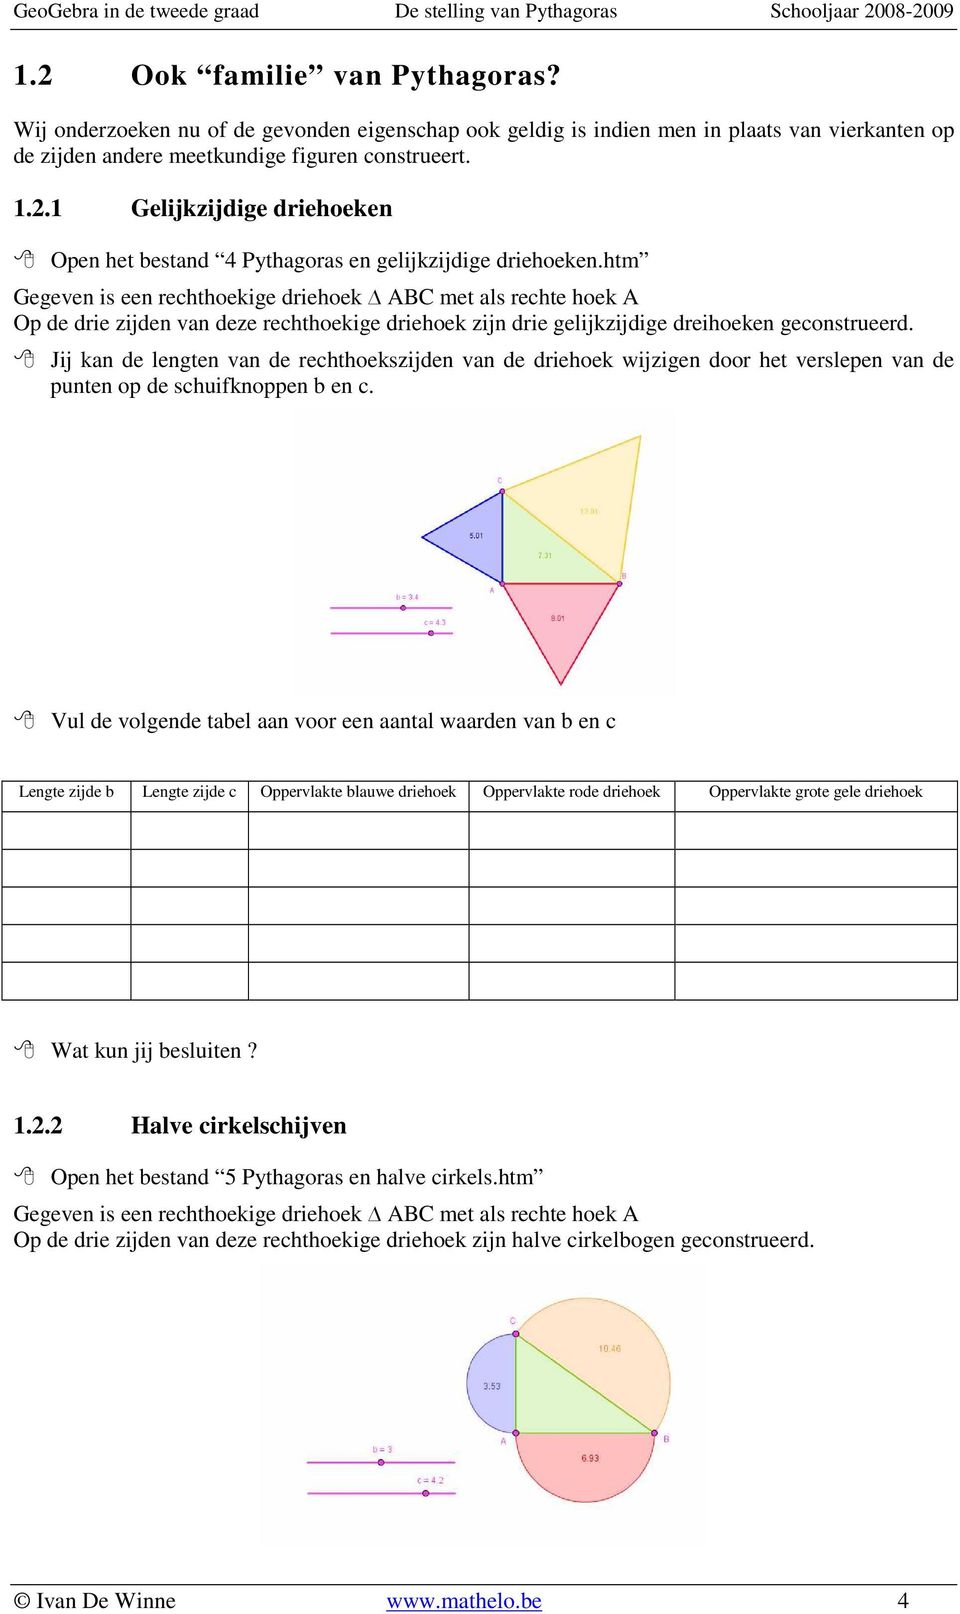 Vul de volgende tabel aan voor een aantal waarden van b en c Lengte zijde b Lengte zijde c Oppervlakte blauwe driehoek Oppervlakte rode driehoek Oppervlakte grote gele driehoek Wat kun jij besluiten?